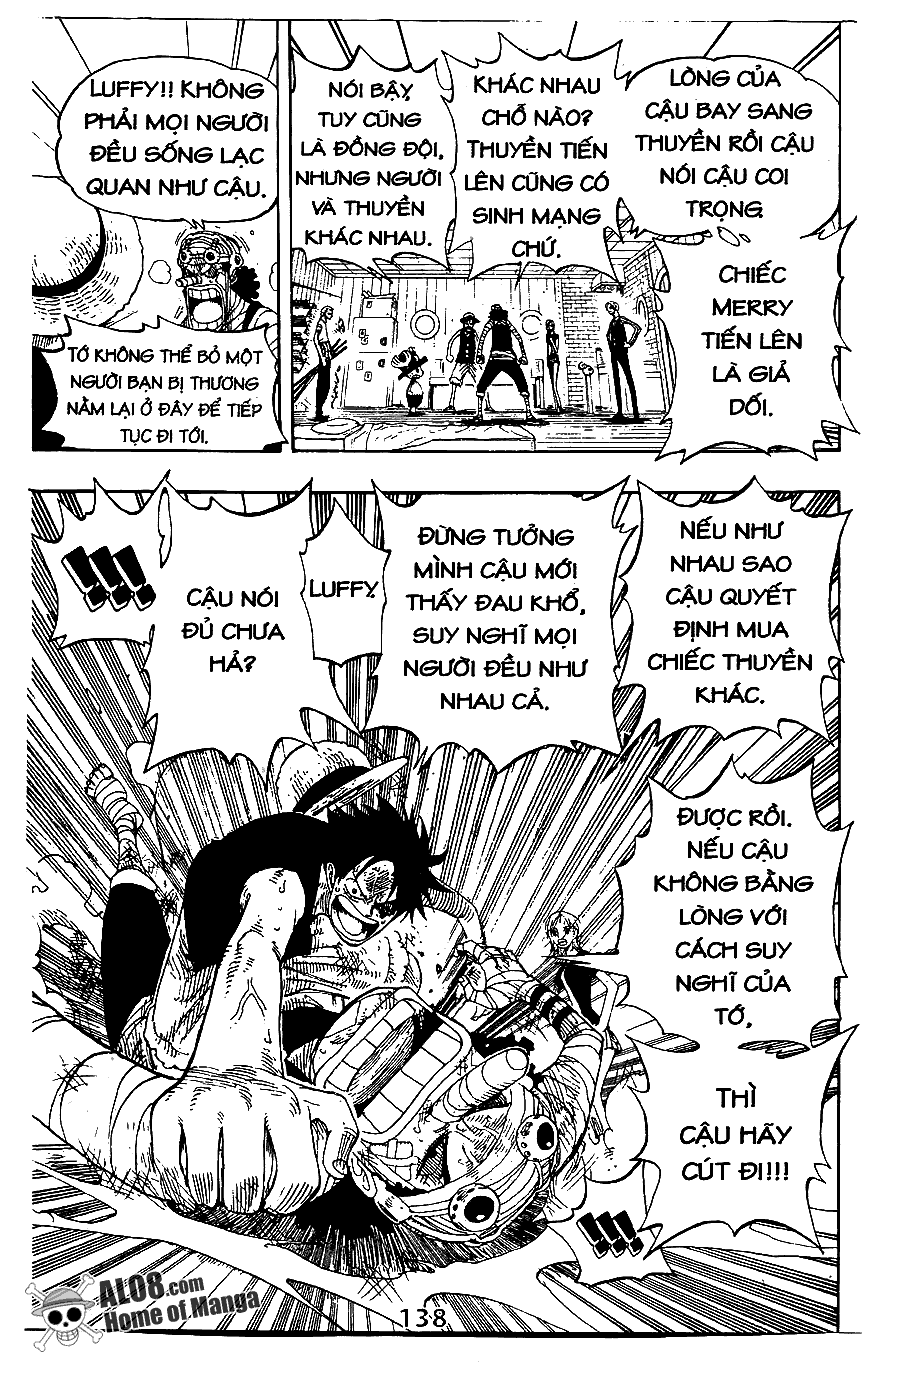 [Event] Gởi gắm tình cảm đến Luffy!! - Page 2 IMG_0136